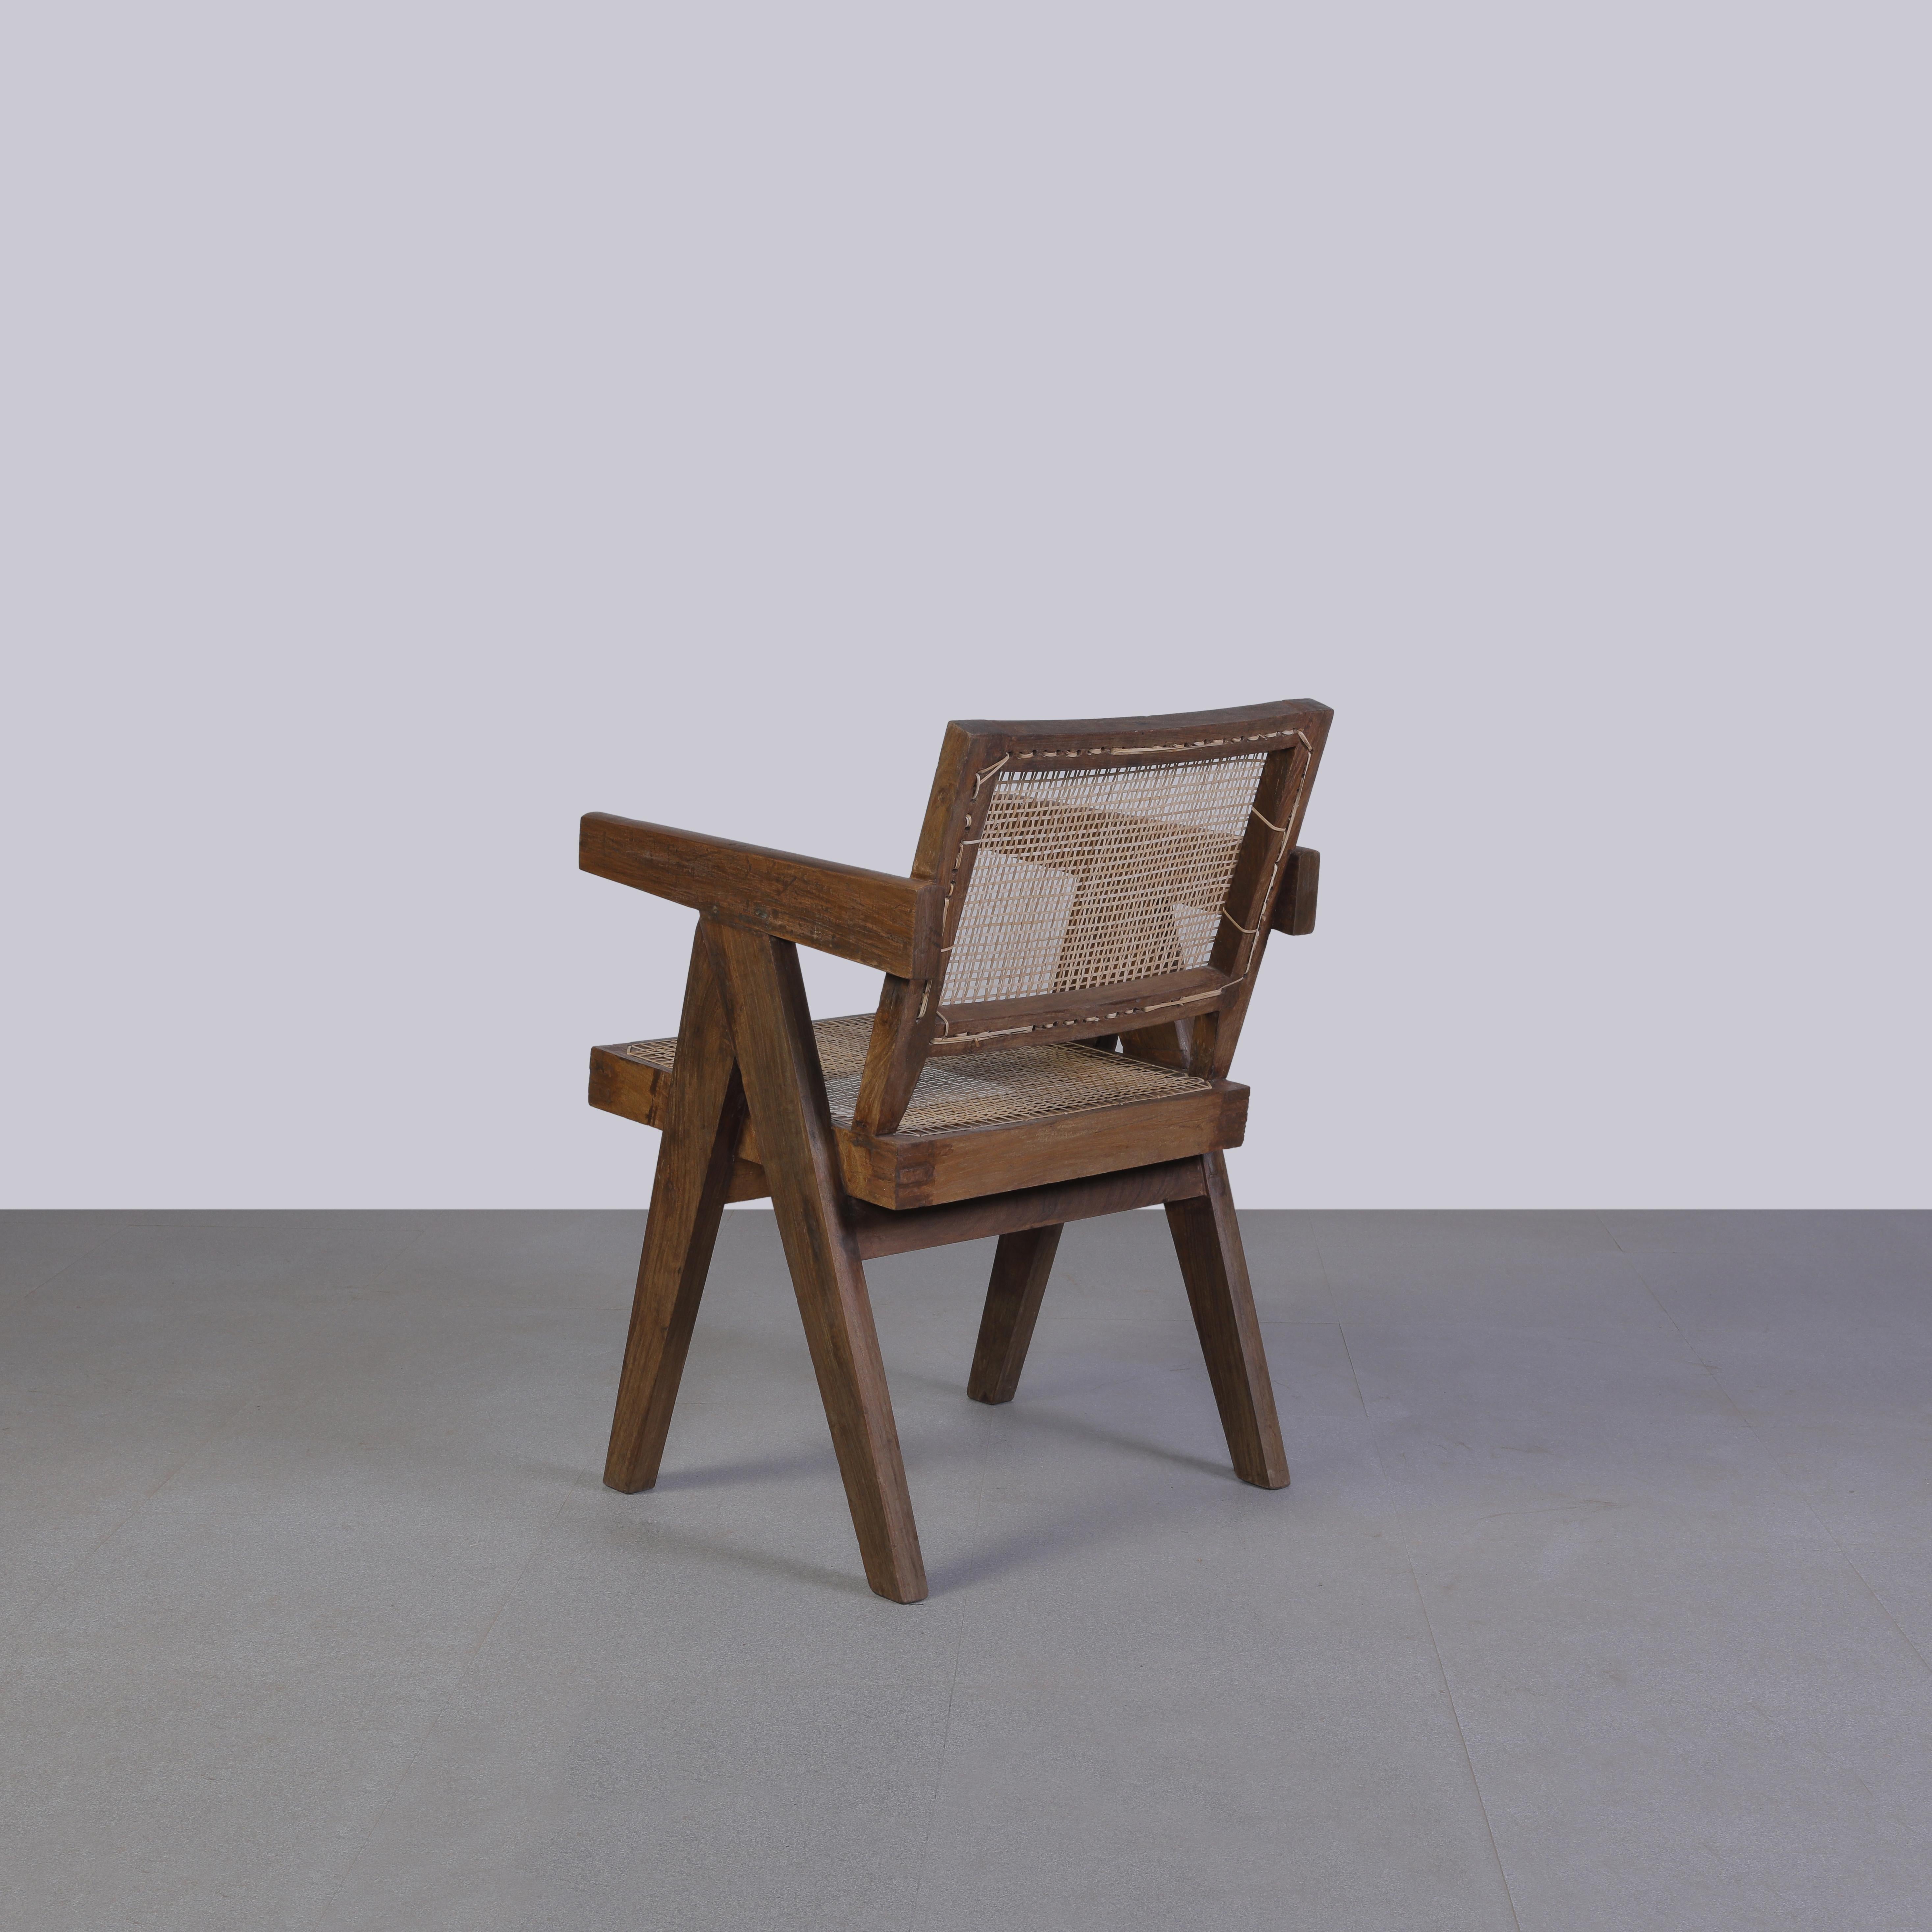 Der Stuhl ist aus patiniertem Teakholz gefertigt, was ihm einen starken Charakter verleiht, der alle Spuren des Alters und seine Einzigartigkeit zeigt. Es ist schließlich ein historisches Stück aus einer UNESCO-Weltkulturerbestätte, das von dem